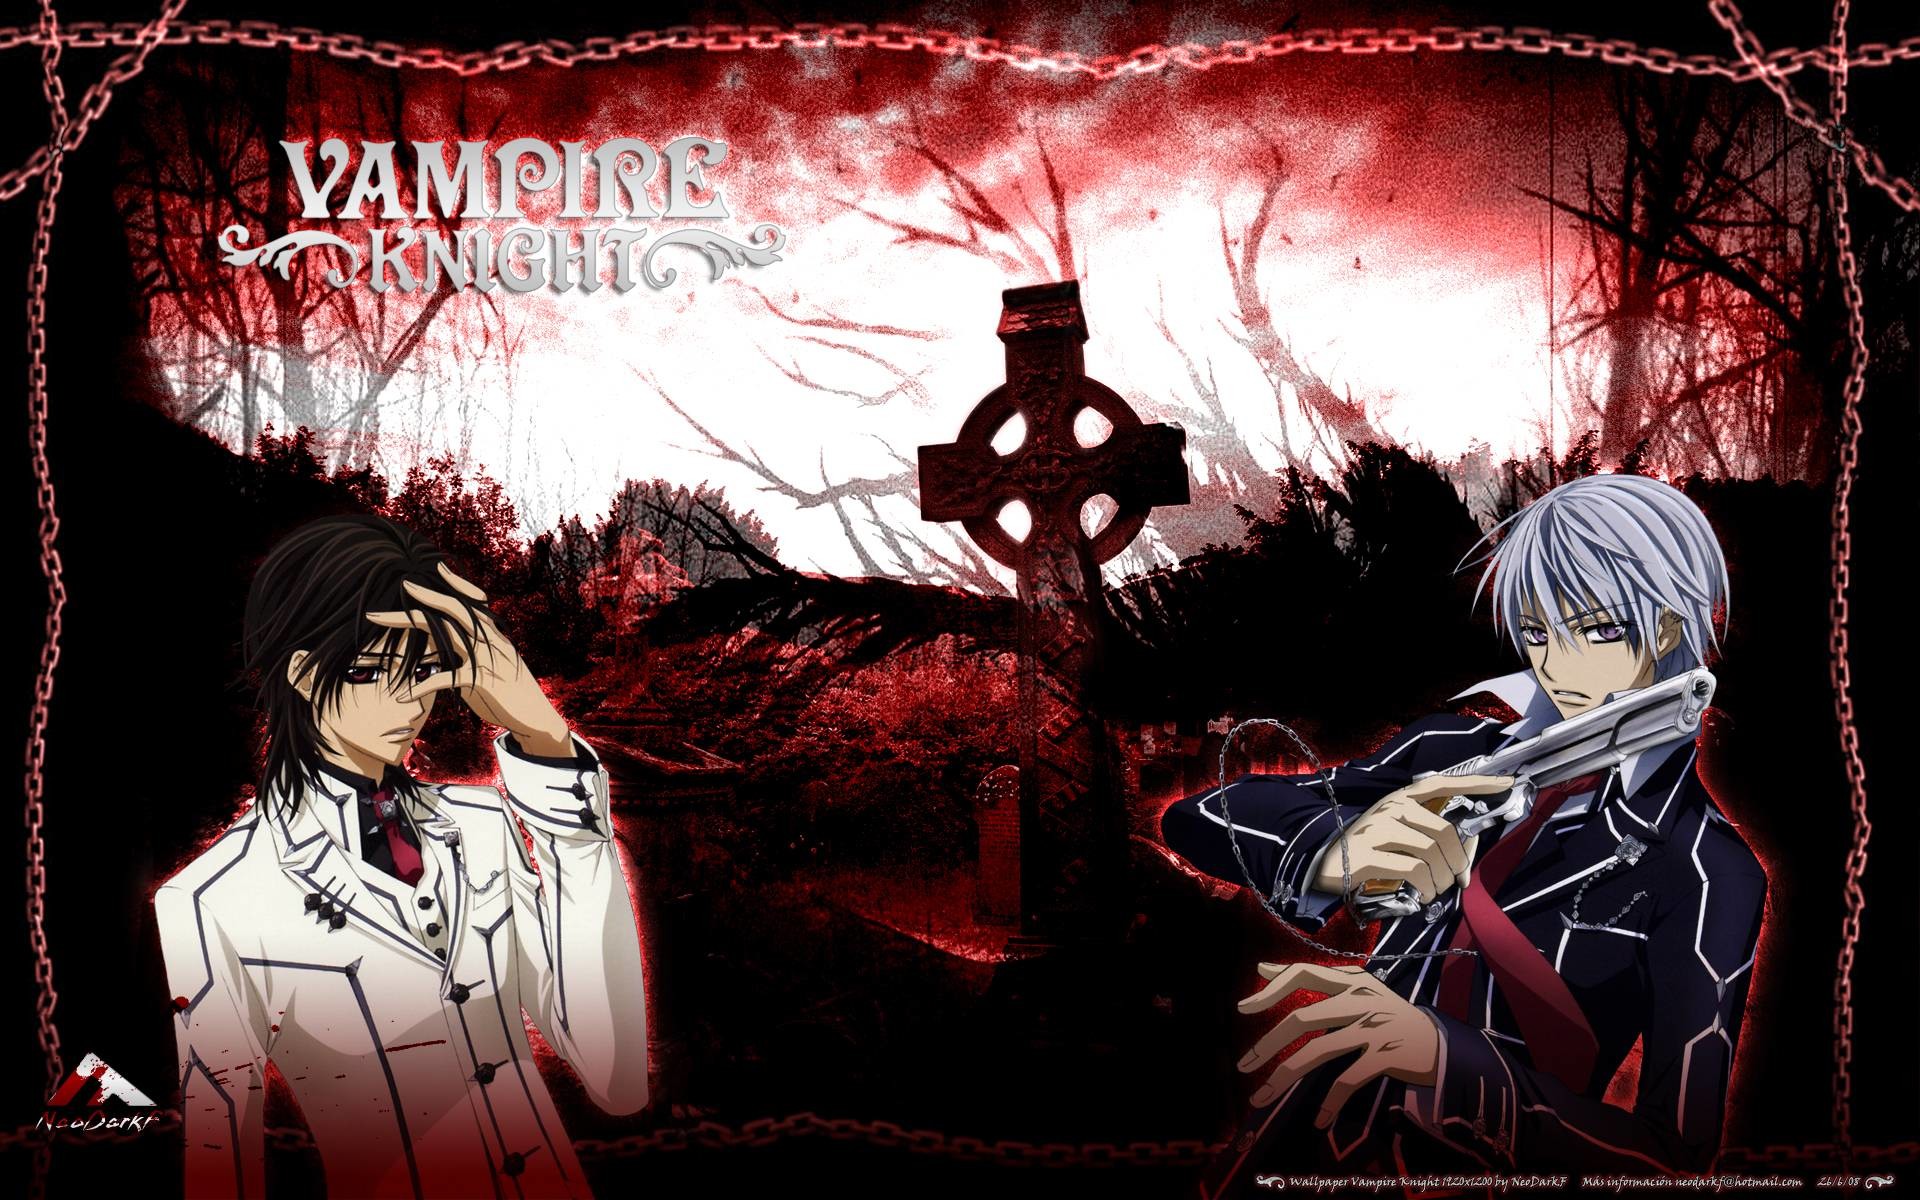 75+] Anime Vampire Wallpaper